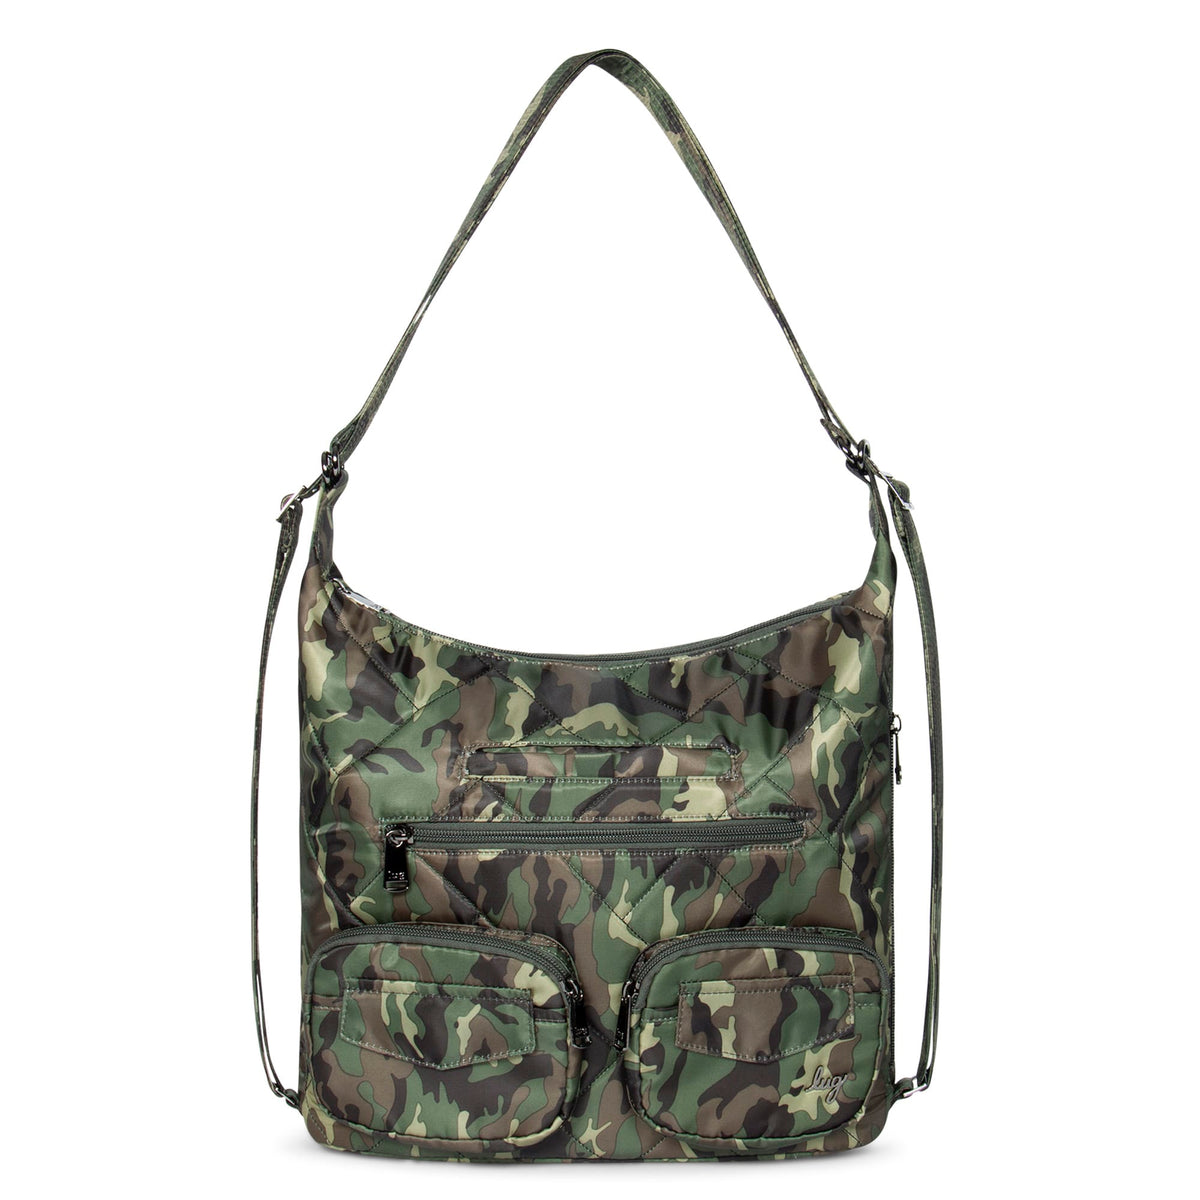 Zipliner 2 Convertible Hobo Bag